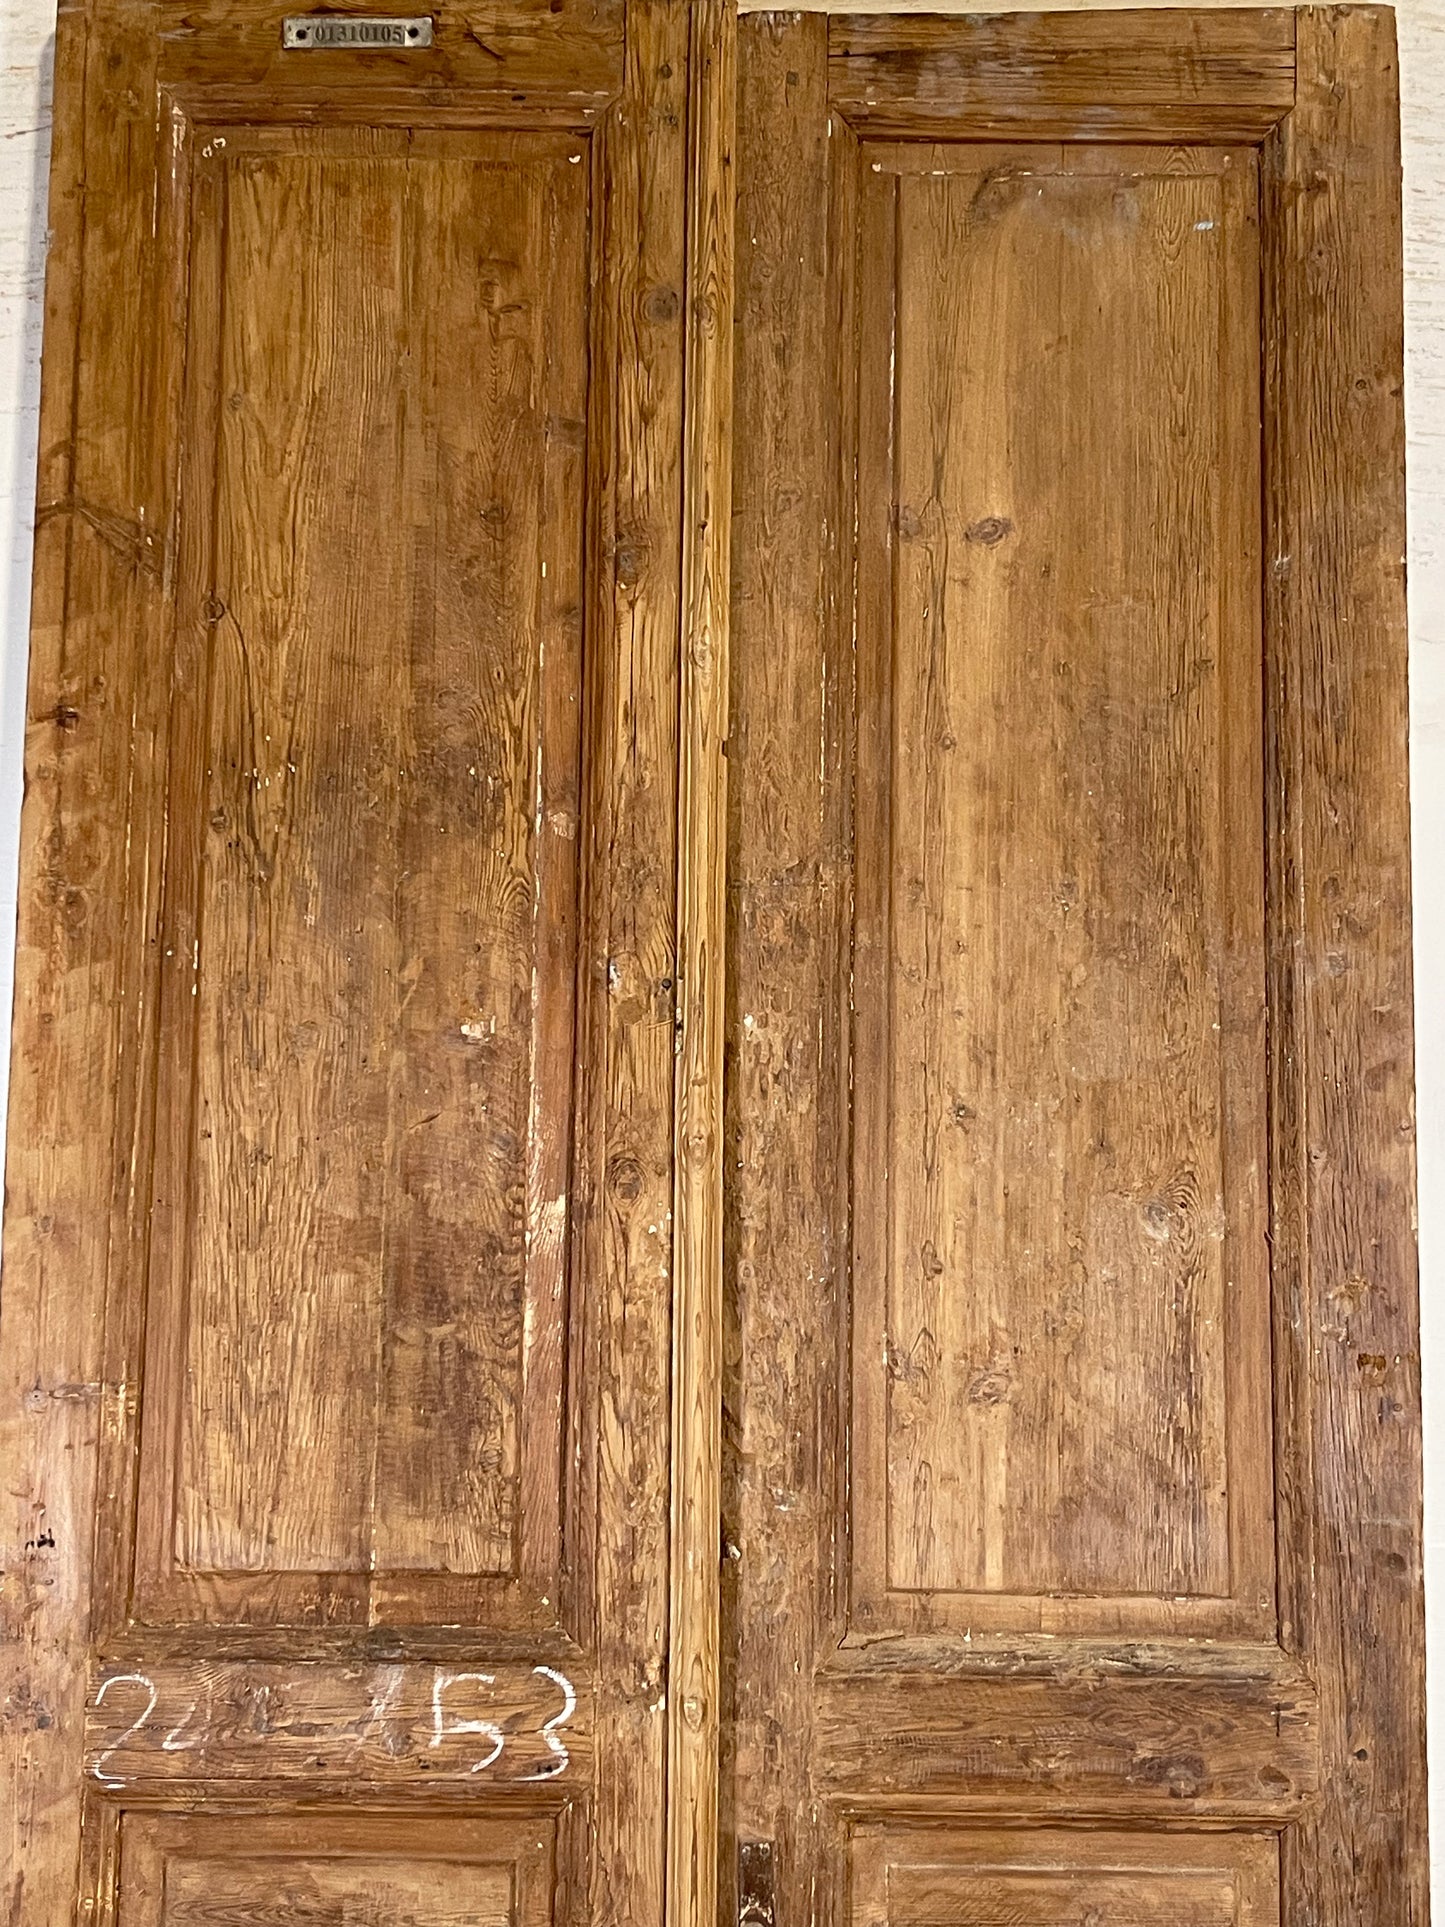 Antique French panel Doors (96.75x42.5) K713